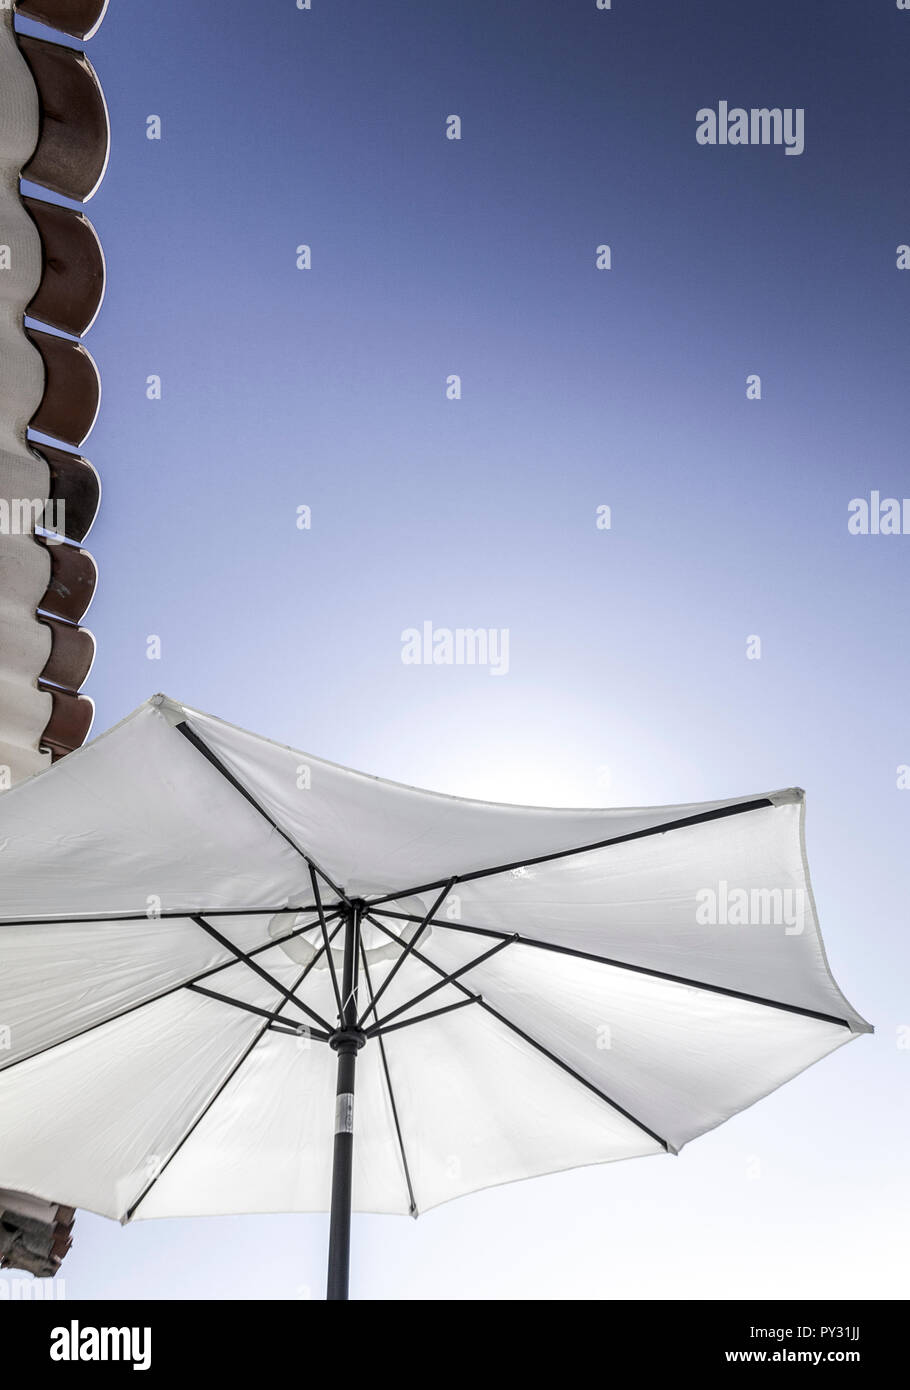 Sonnenschirm mit blauem Himmel Stock Photo